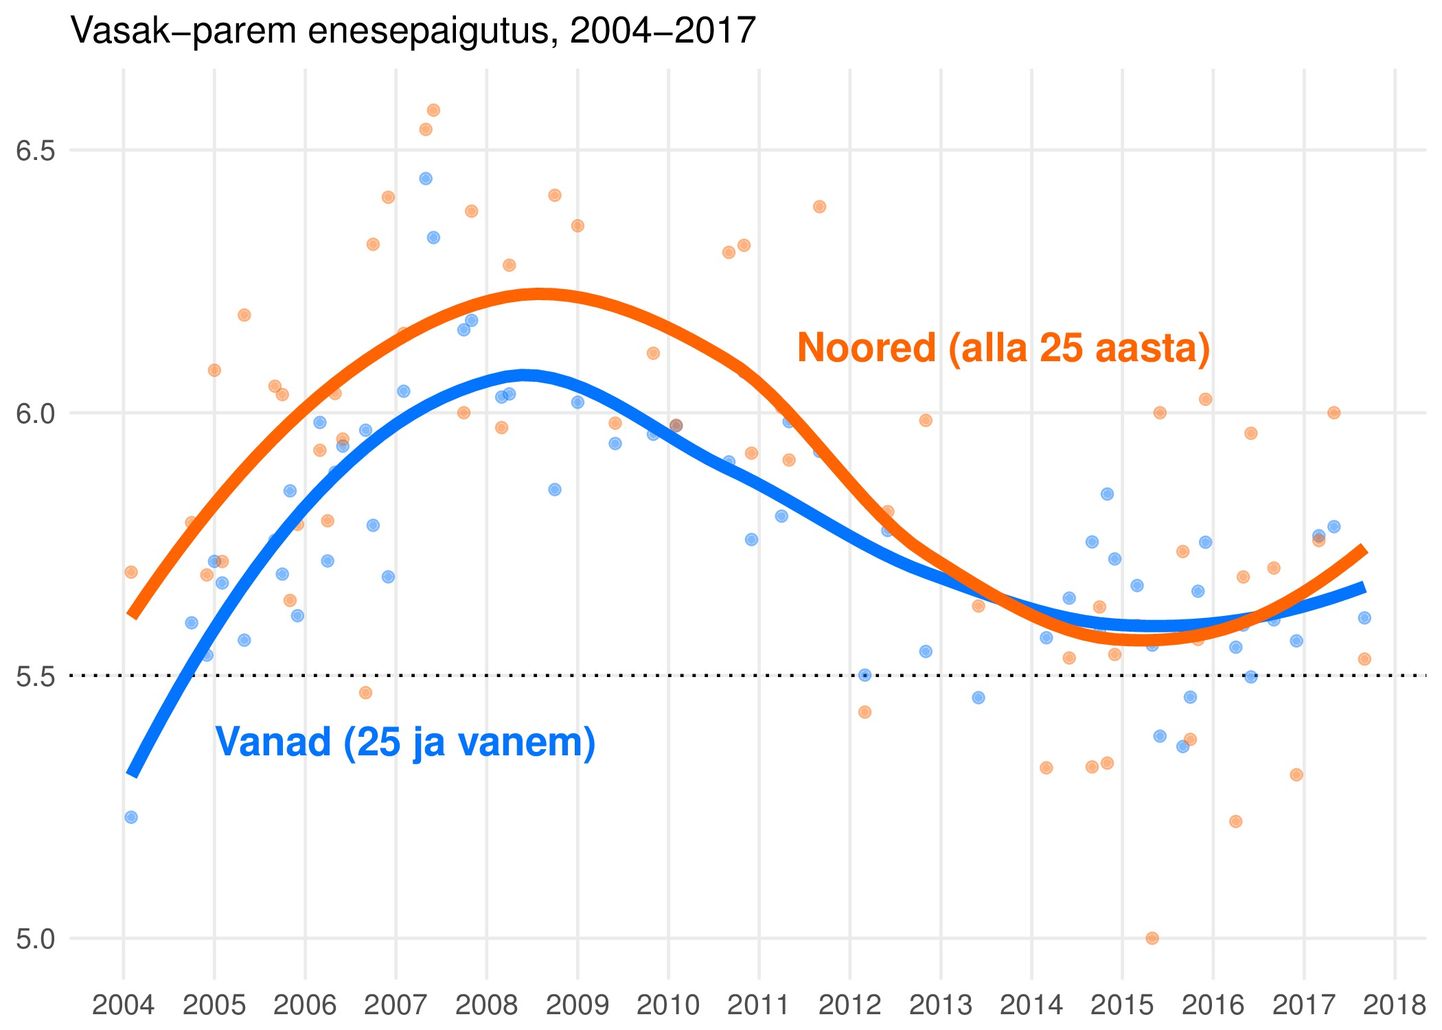 Eesti inimeste ideoloogiline enesemääratlus parem-vasak skaalal 2004-2017.